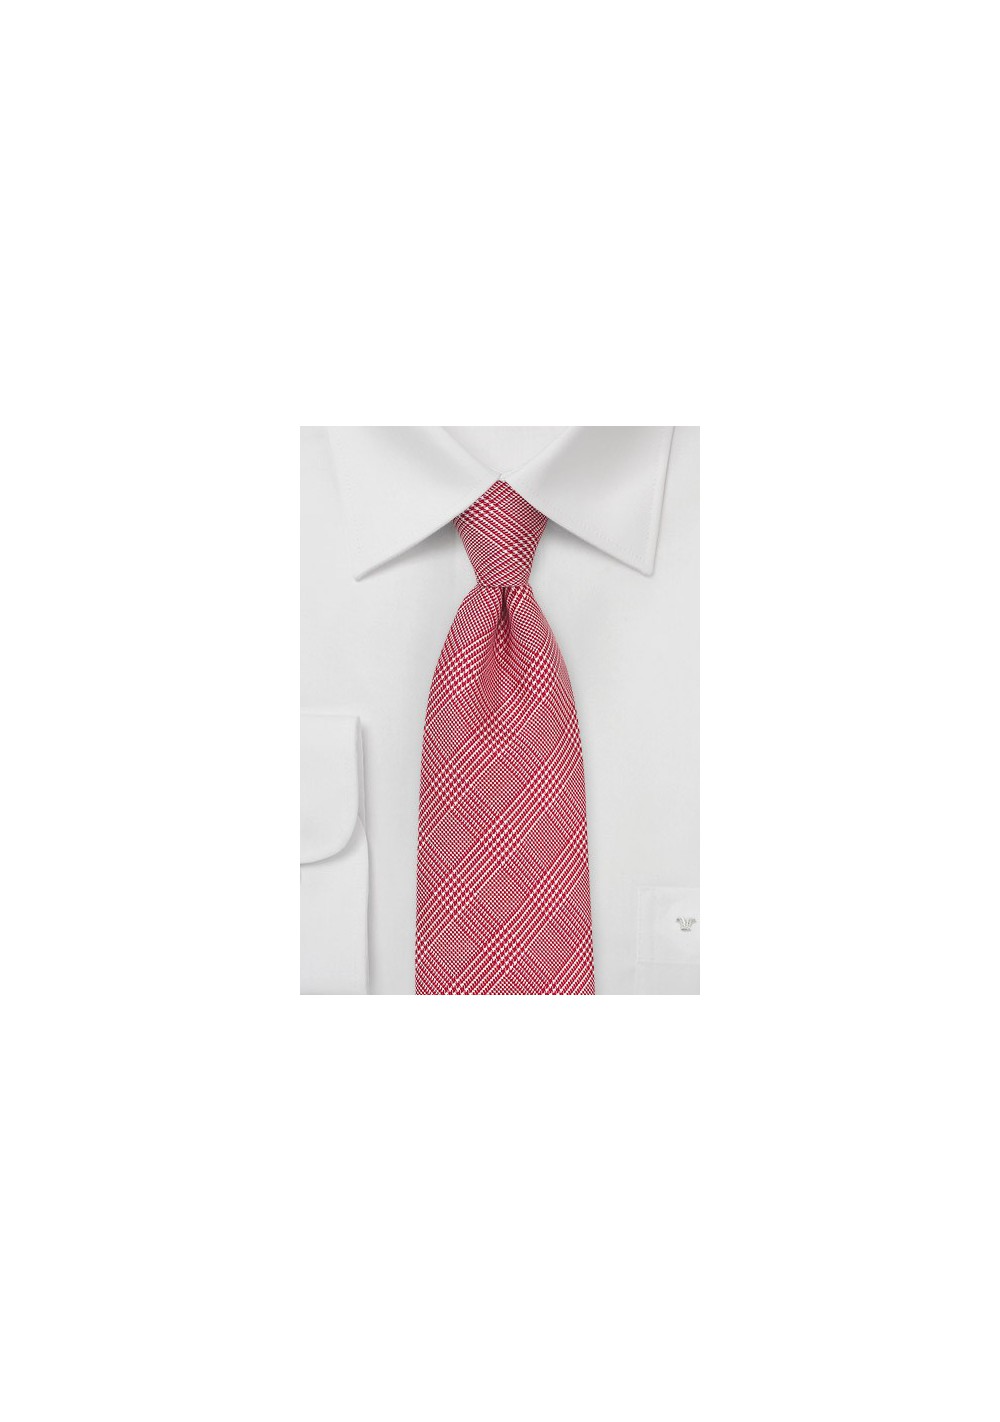 Glen Check Silk Tie in Bright Red